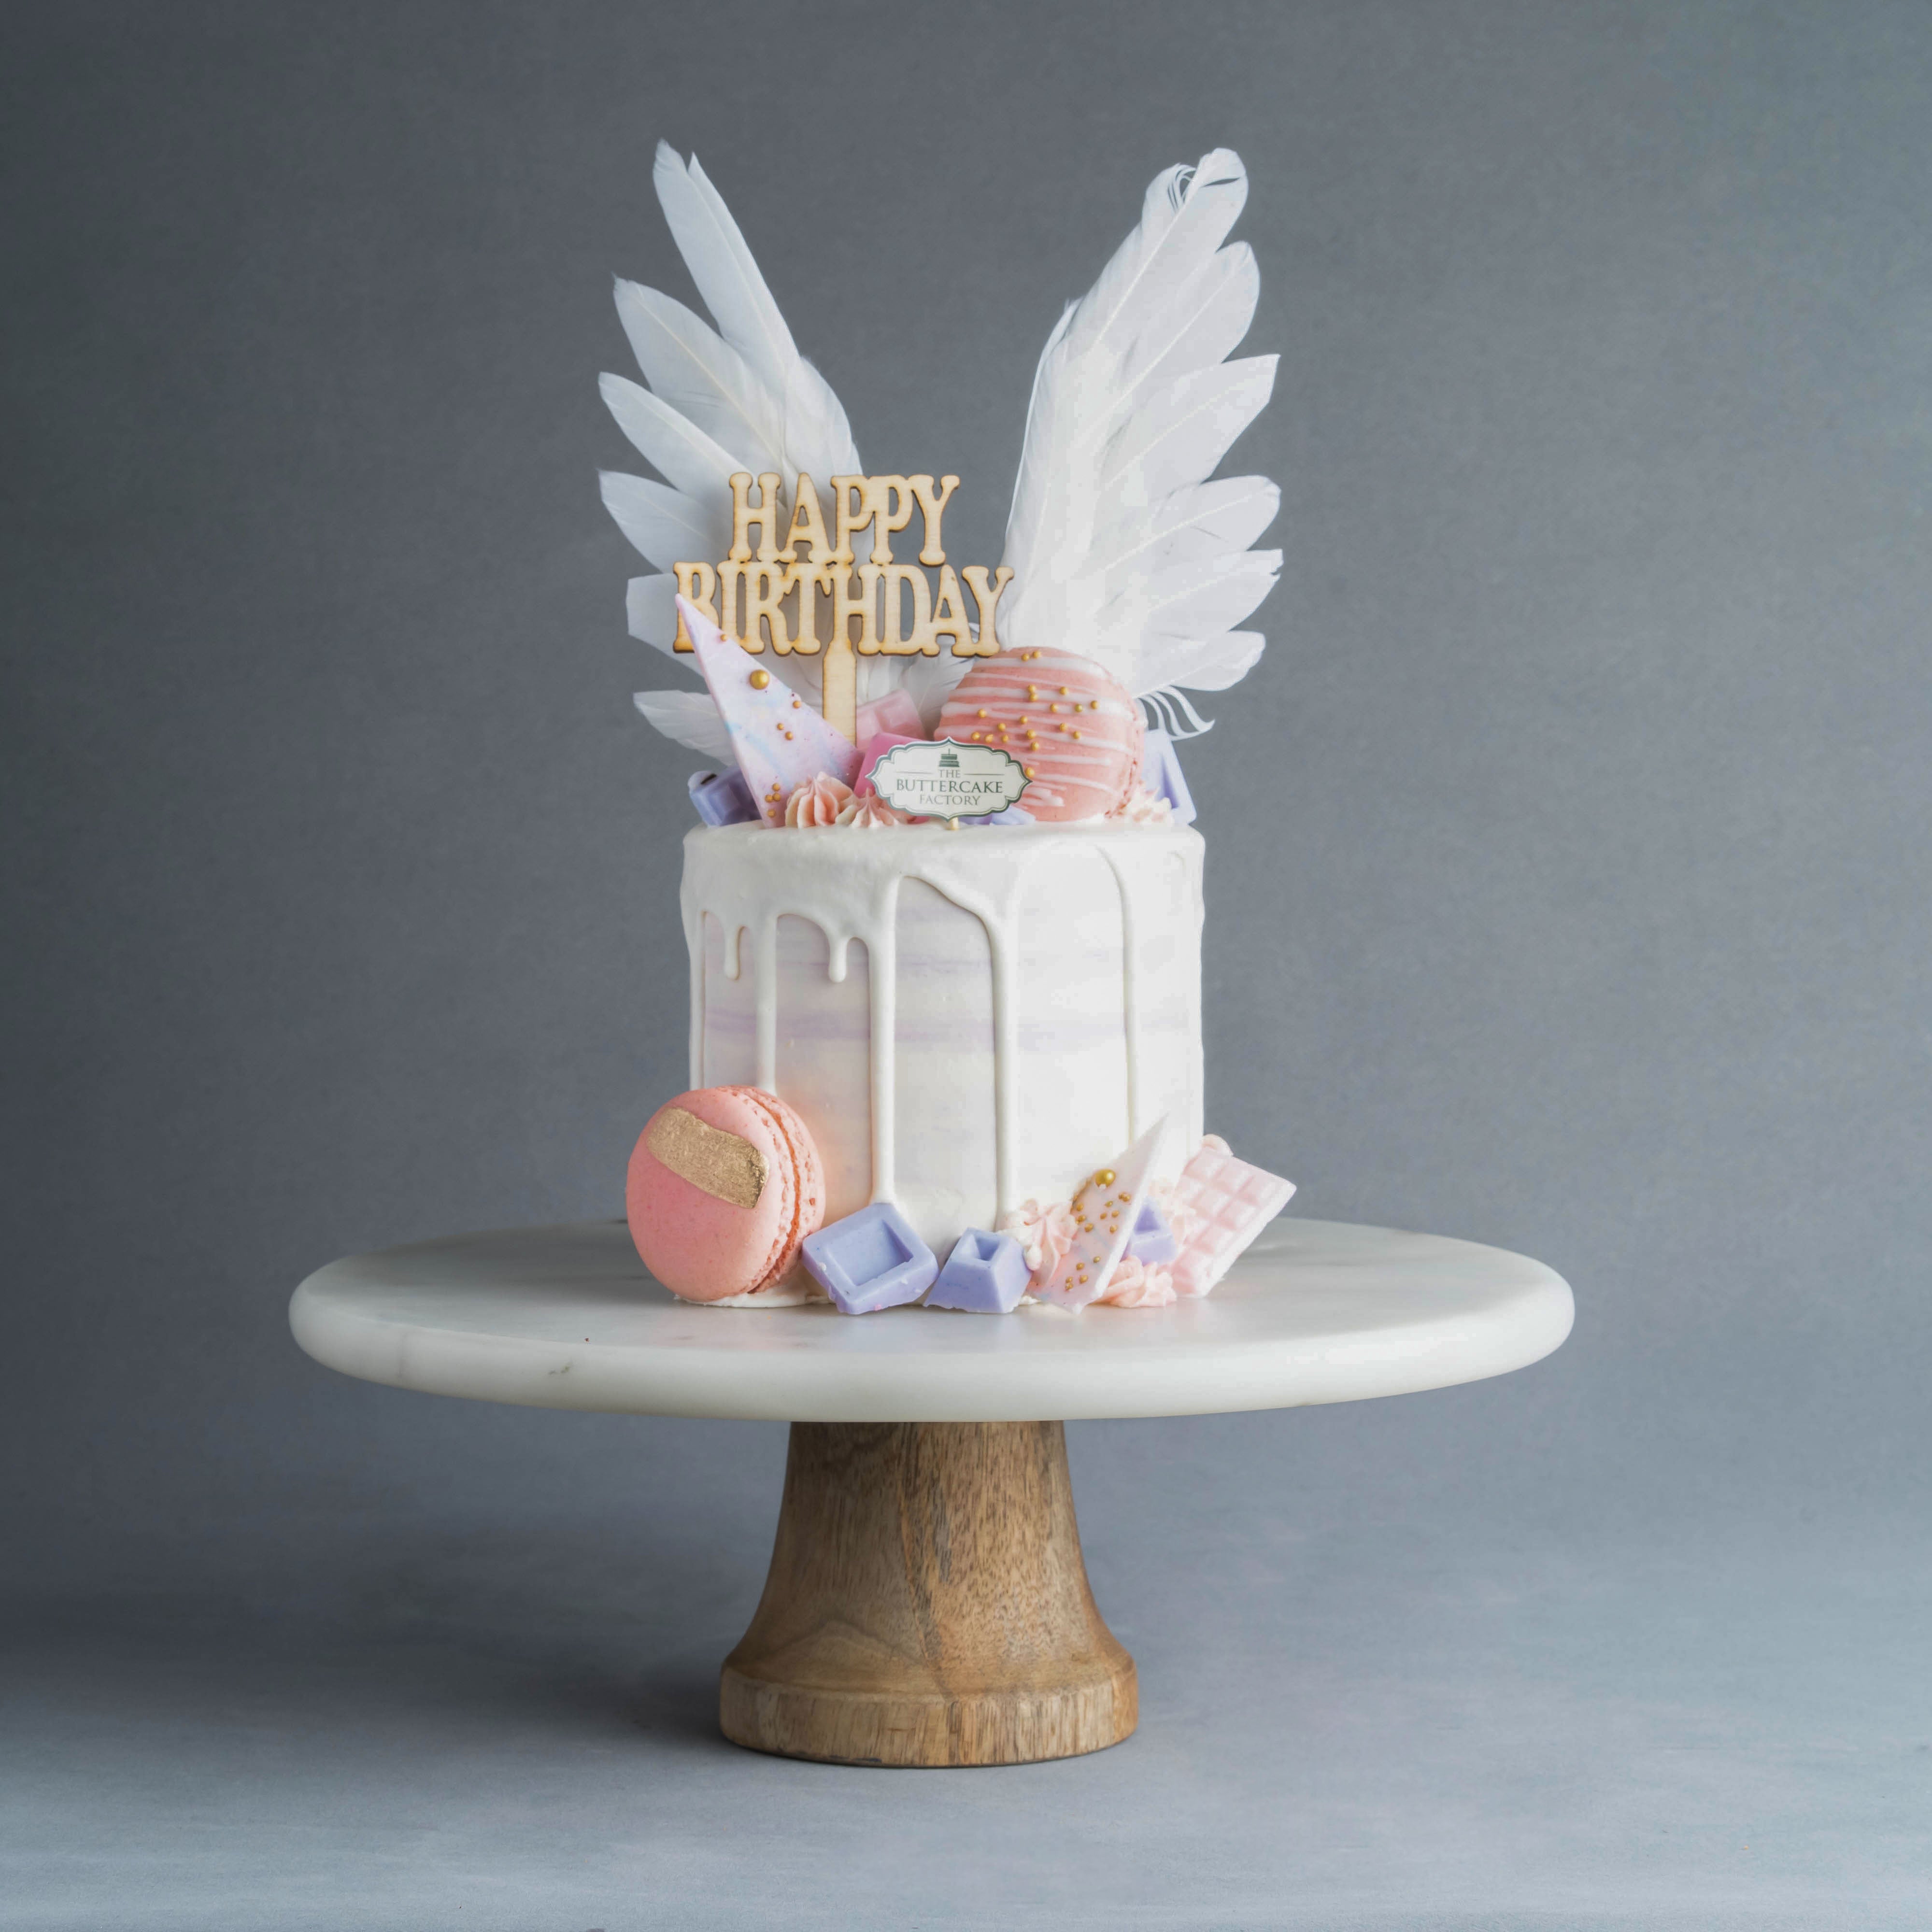 Torta Paradiso: Italian “Heaven” cake – Ilaria Barisi